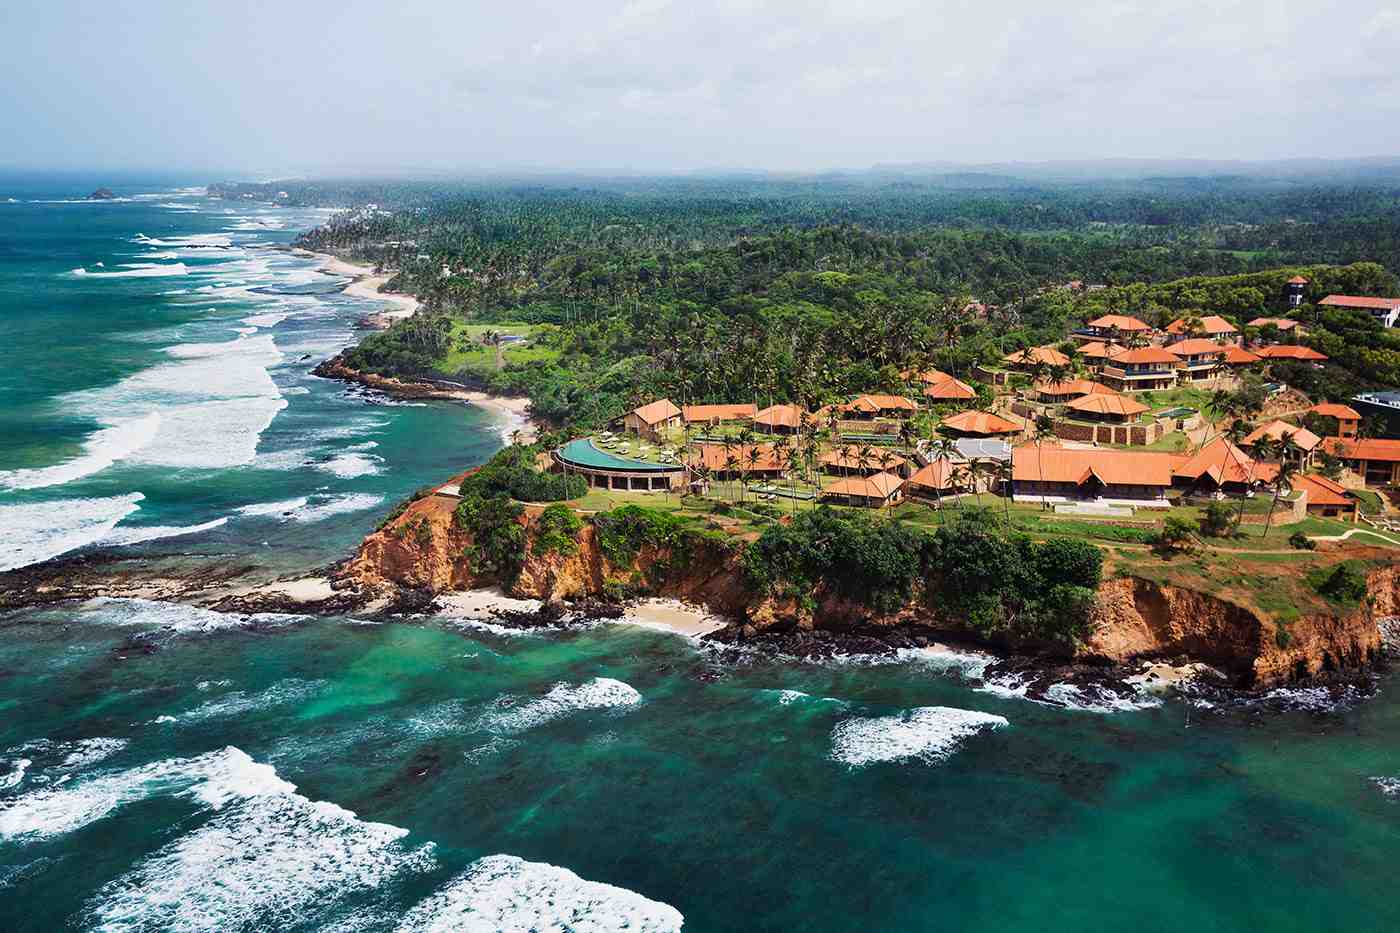 斯里兰卡旅游景点,斯里兰卡旅游景区,斯里兰卡旅游景点推荐-蚂蜂窝旅游指南